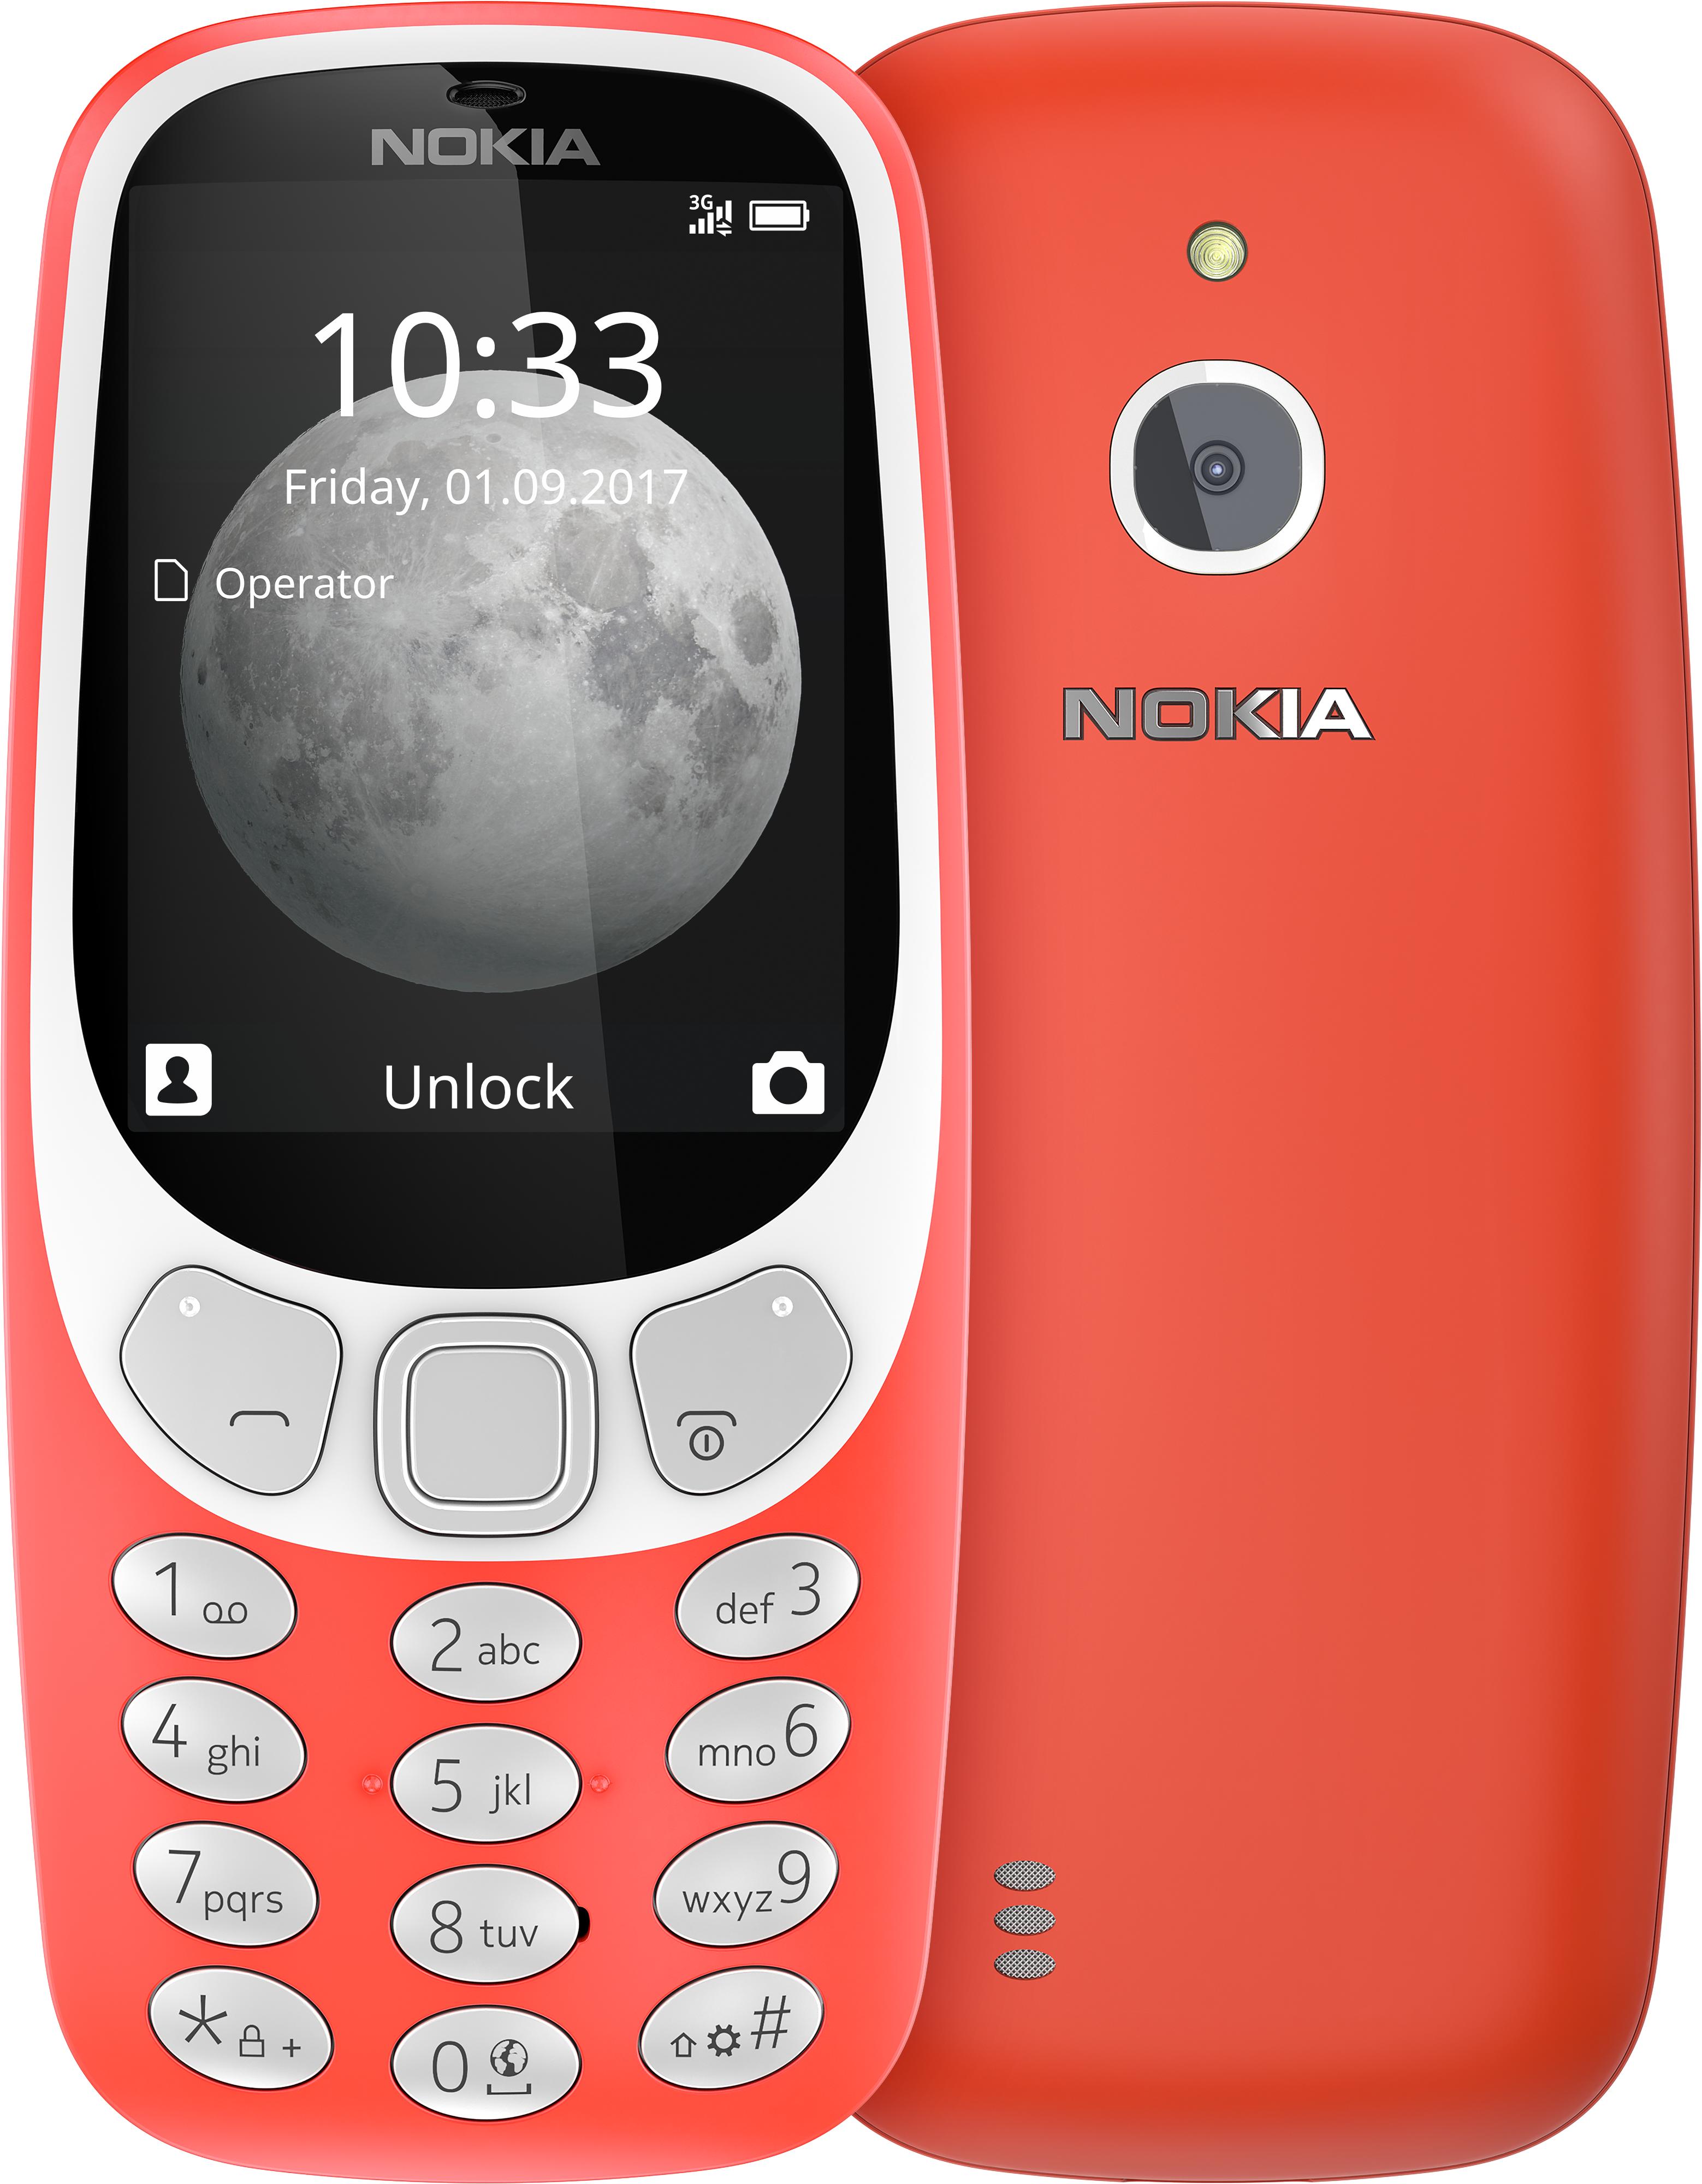 Faret vild Godkendelse Bunke af Nokia 3310 3G mobile phone | Legacy basic phone with 3G